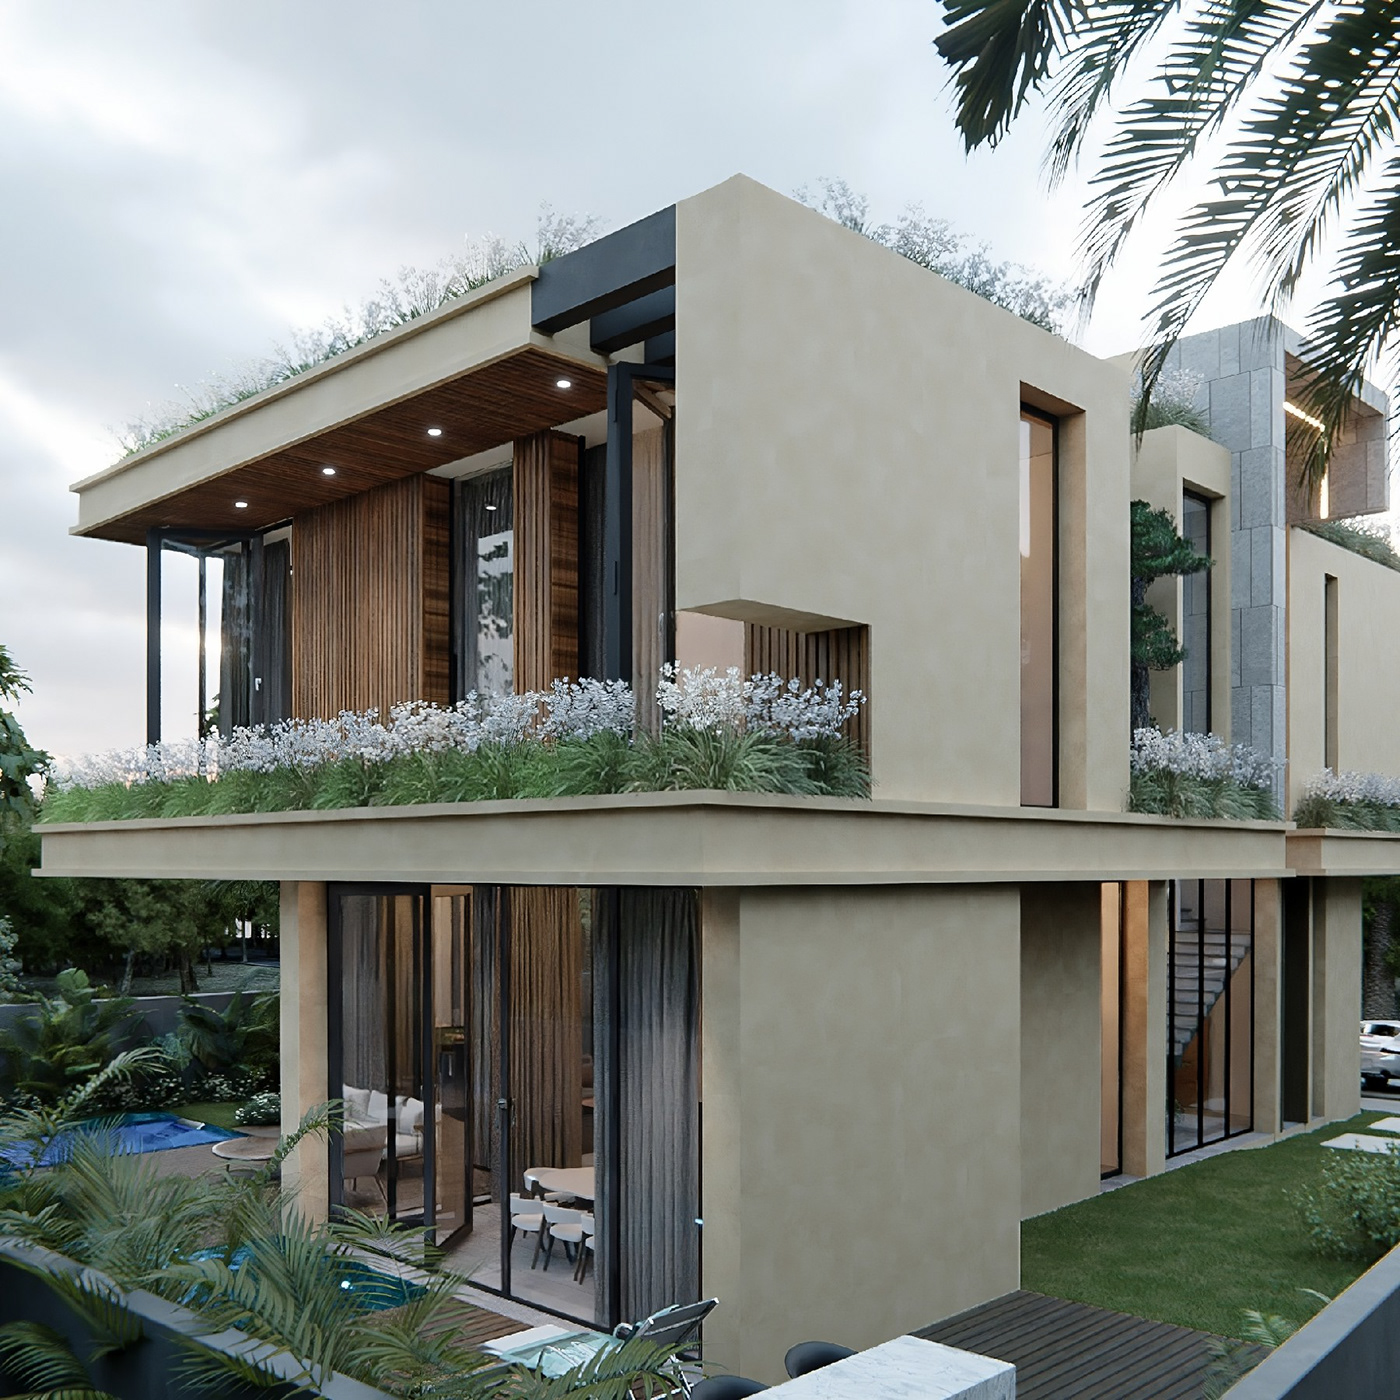 Villa architecture visualization Render interior design  archviz modern design 3D exterior